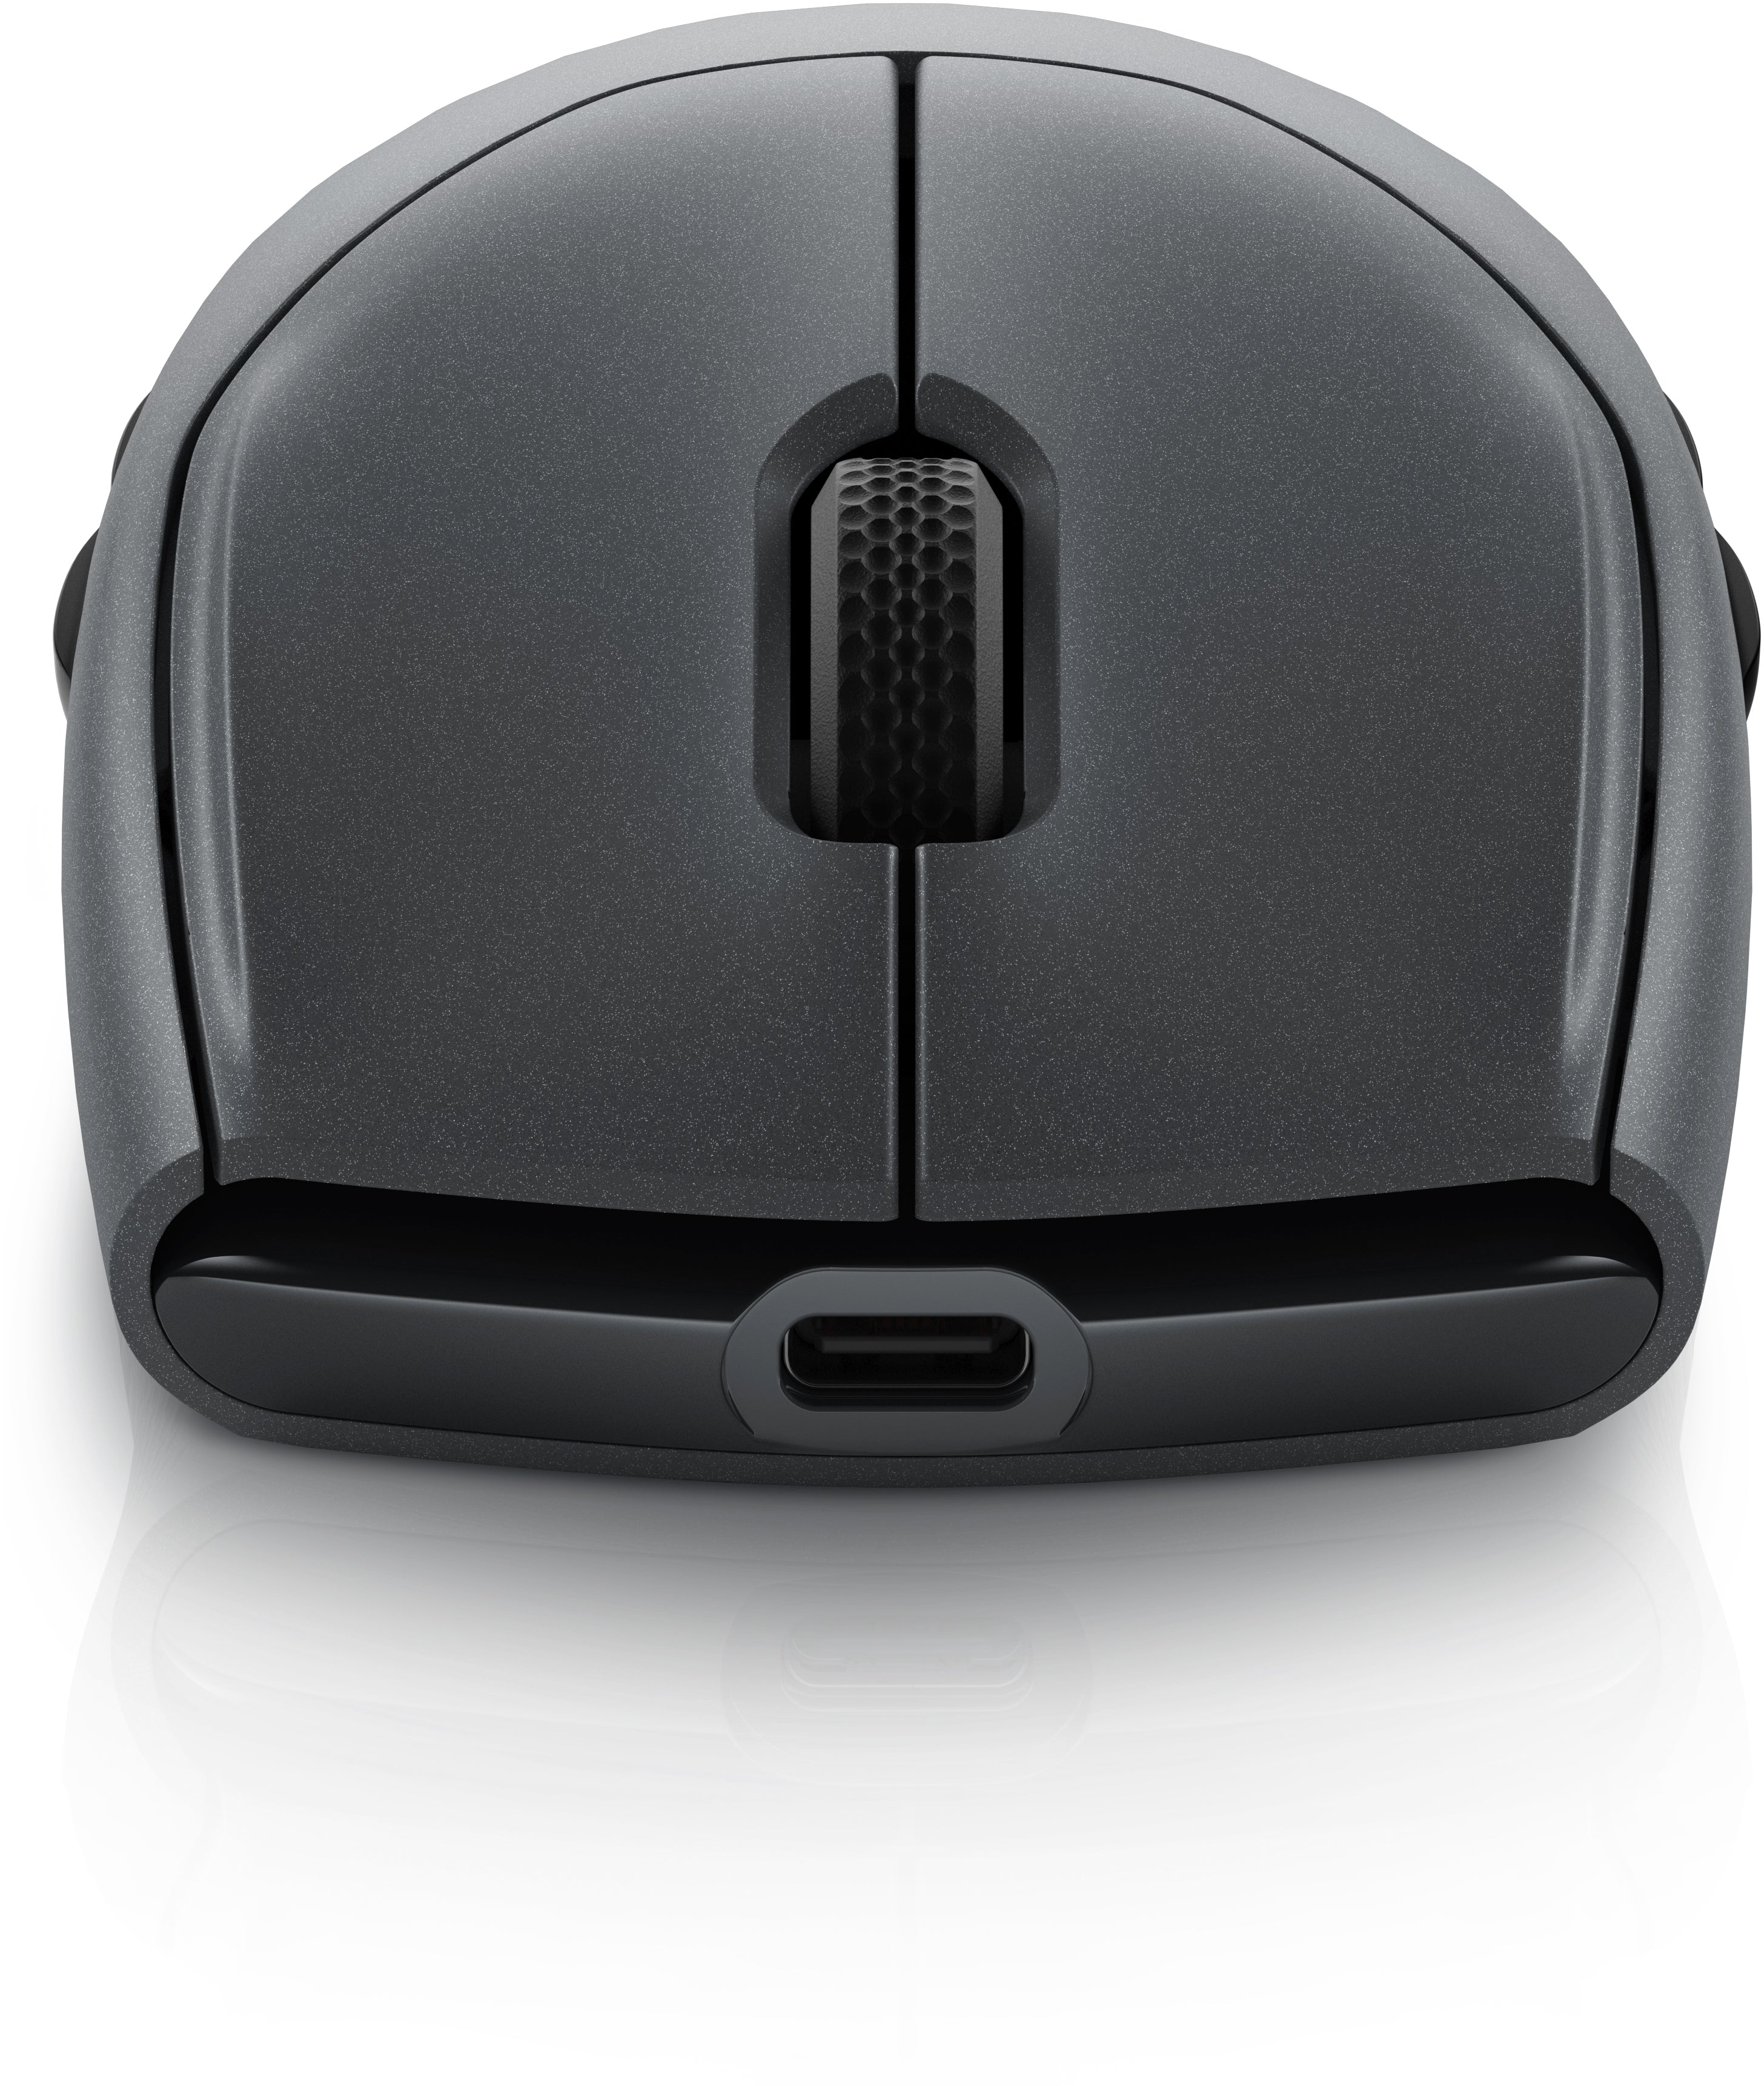 Alienware Tri-Mode Gaming Mouse AW720M Optisk Trådlös Svart